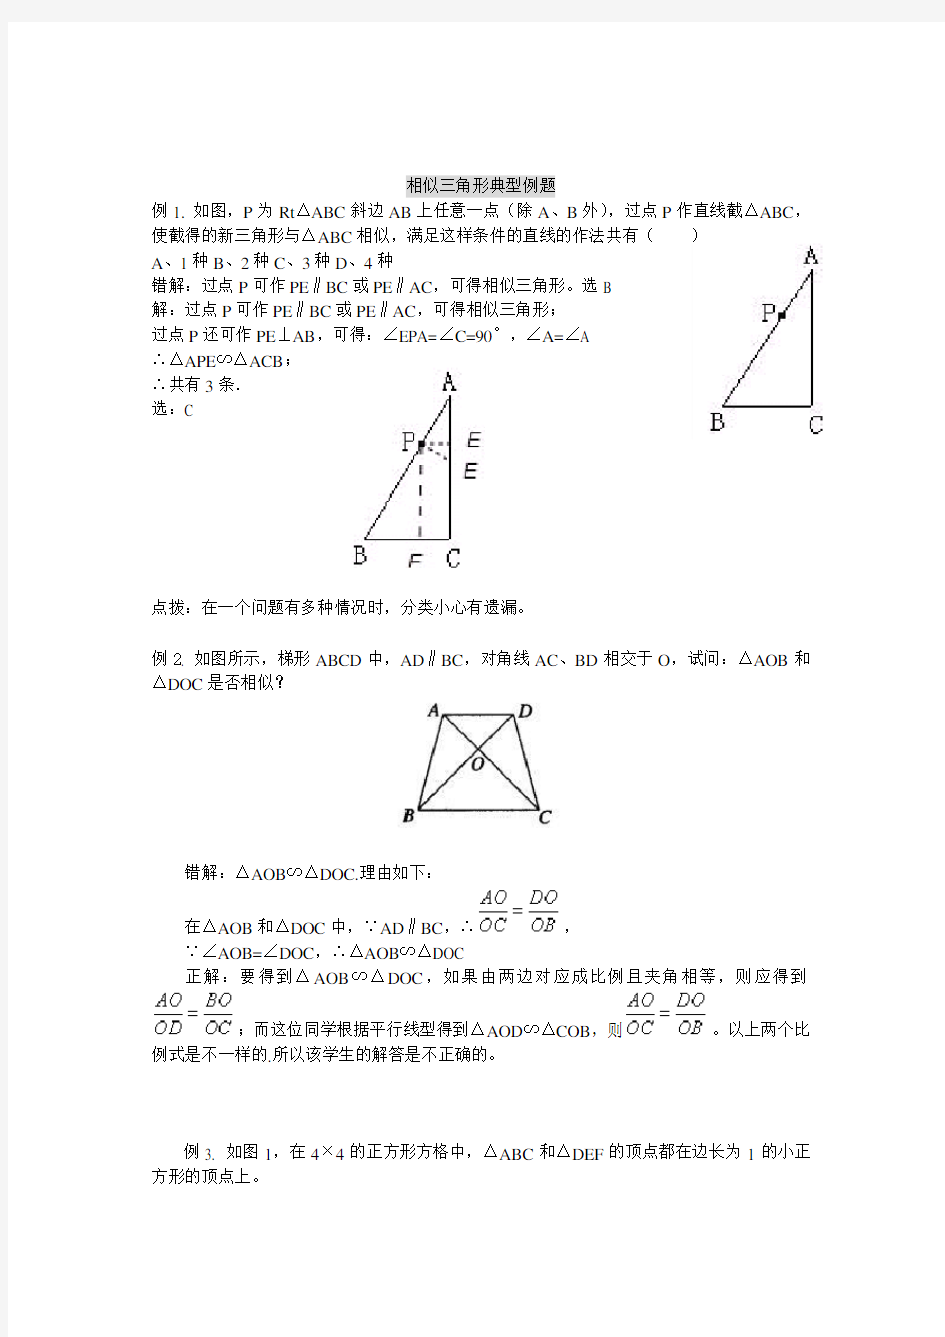 相似三角形典型例题